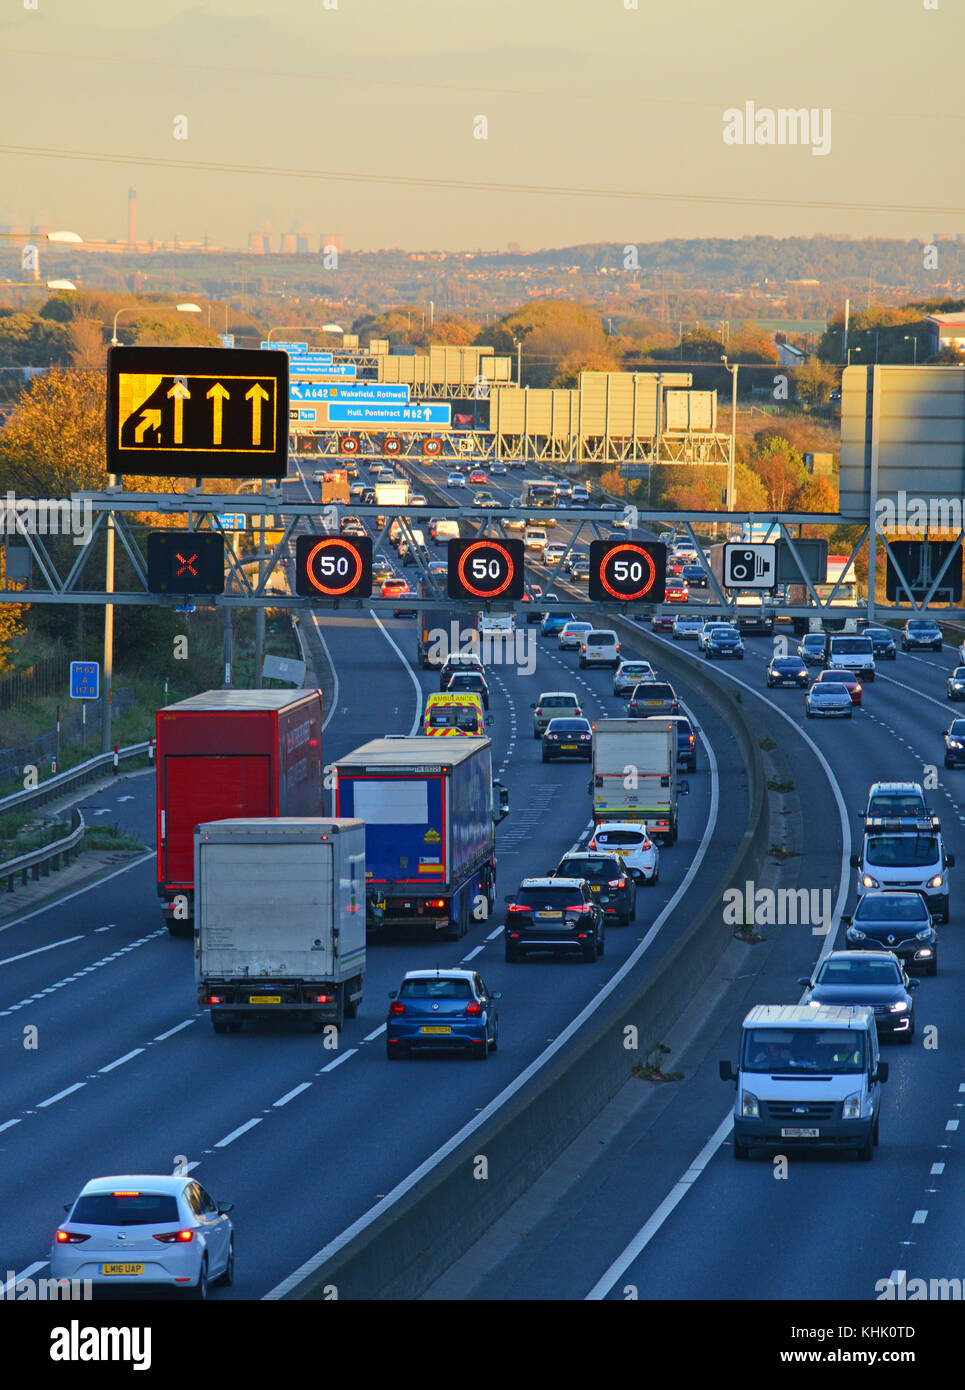 Fermeture de voies de signalisation avertissement de limite de vitesse réduite dans la congestion du trafic lourd sur l'autoroute m62 à l'heure de pointe, Leeds united kingdom Banque D'Images